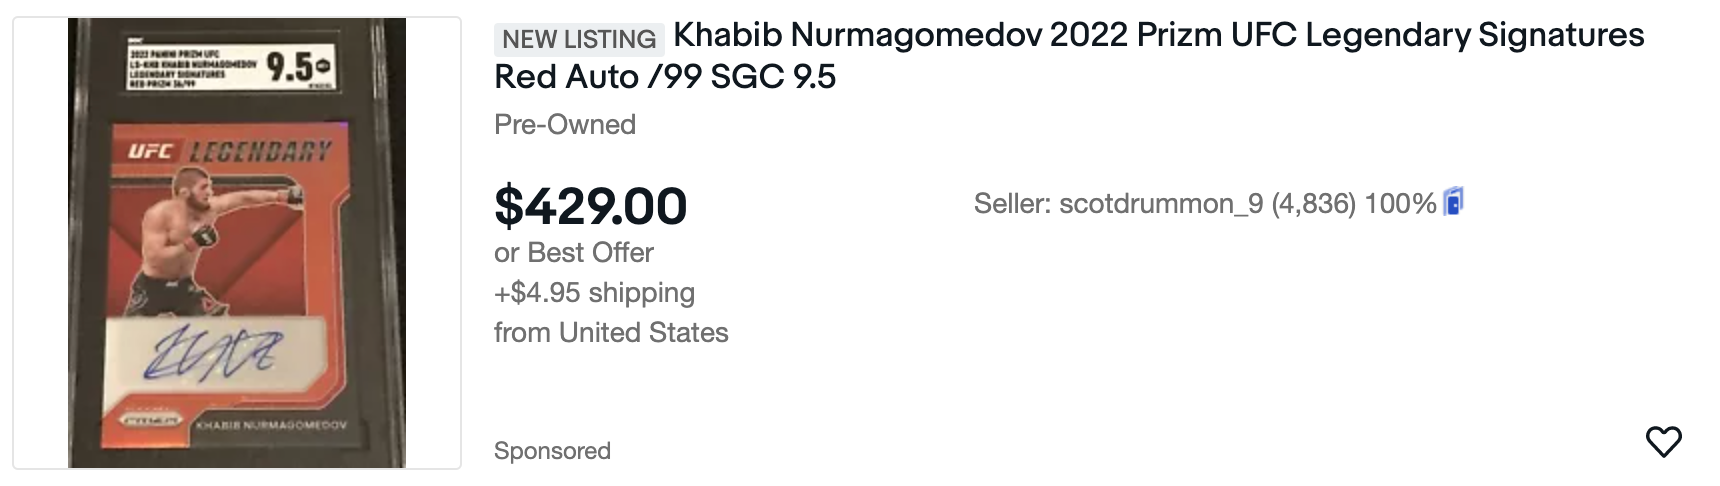 Khabib Nurmagomedov Featured Listing